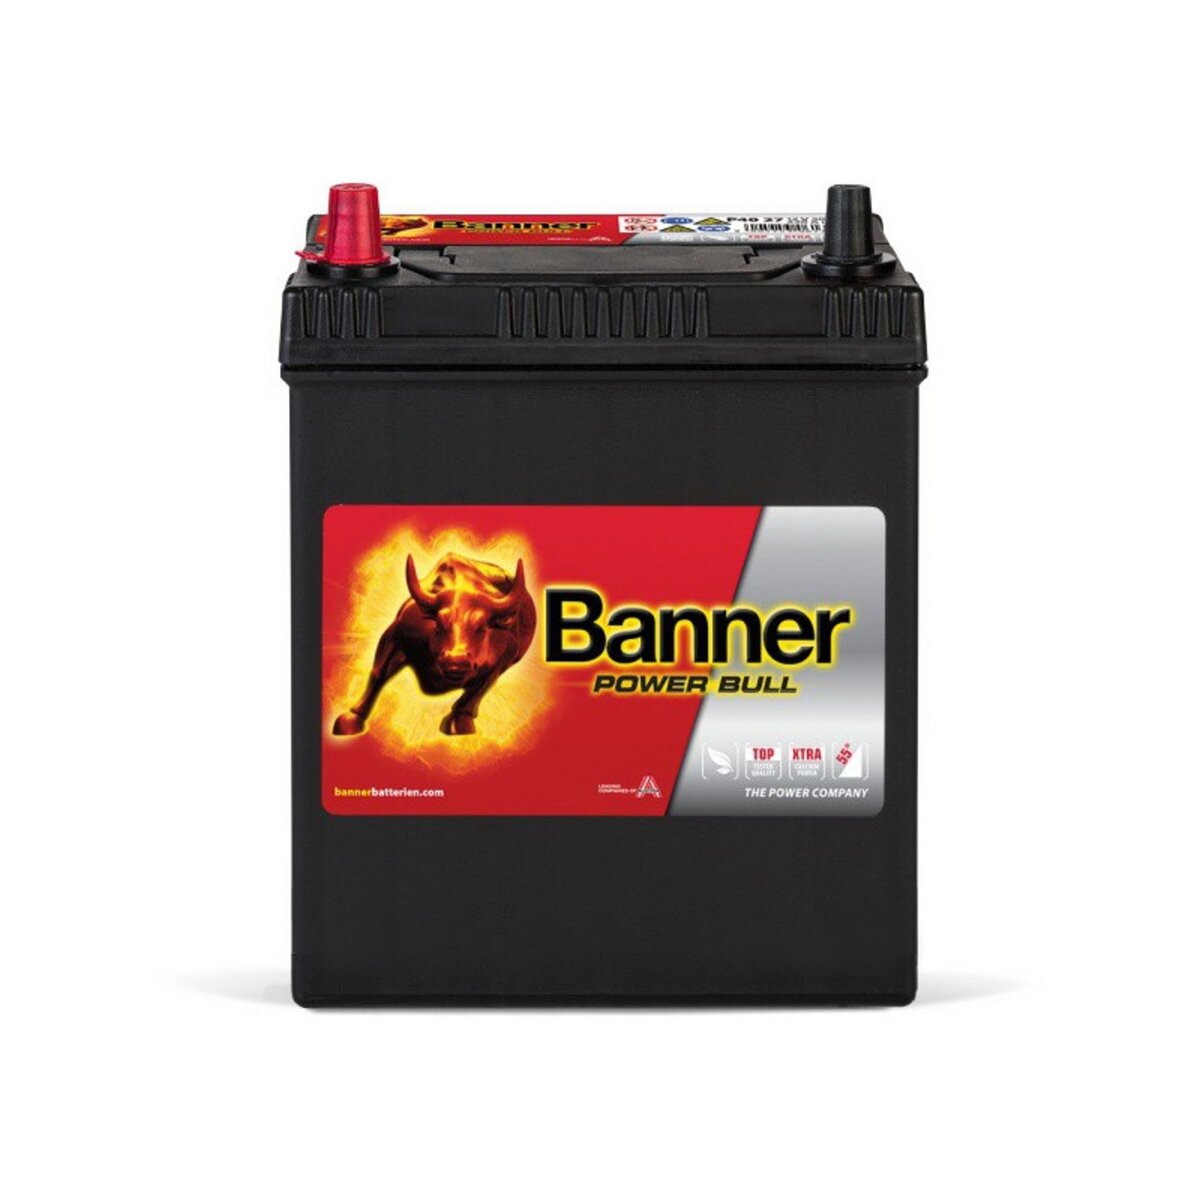 BANNER Banner Power Bull P4027 12v 40AH 330A